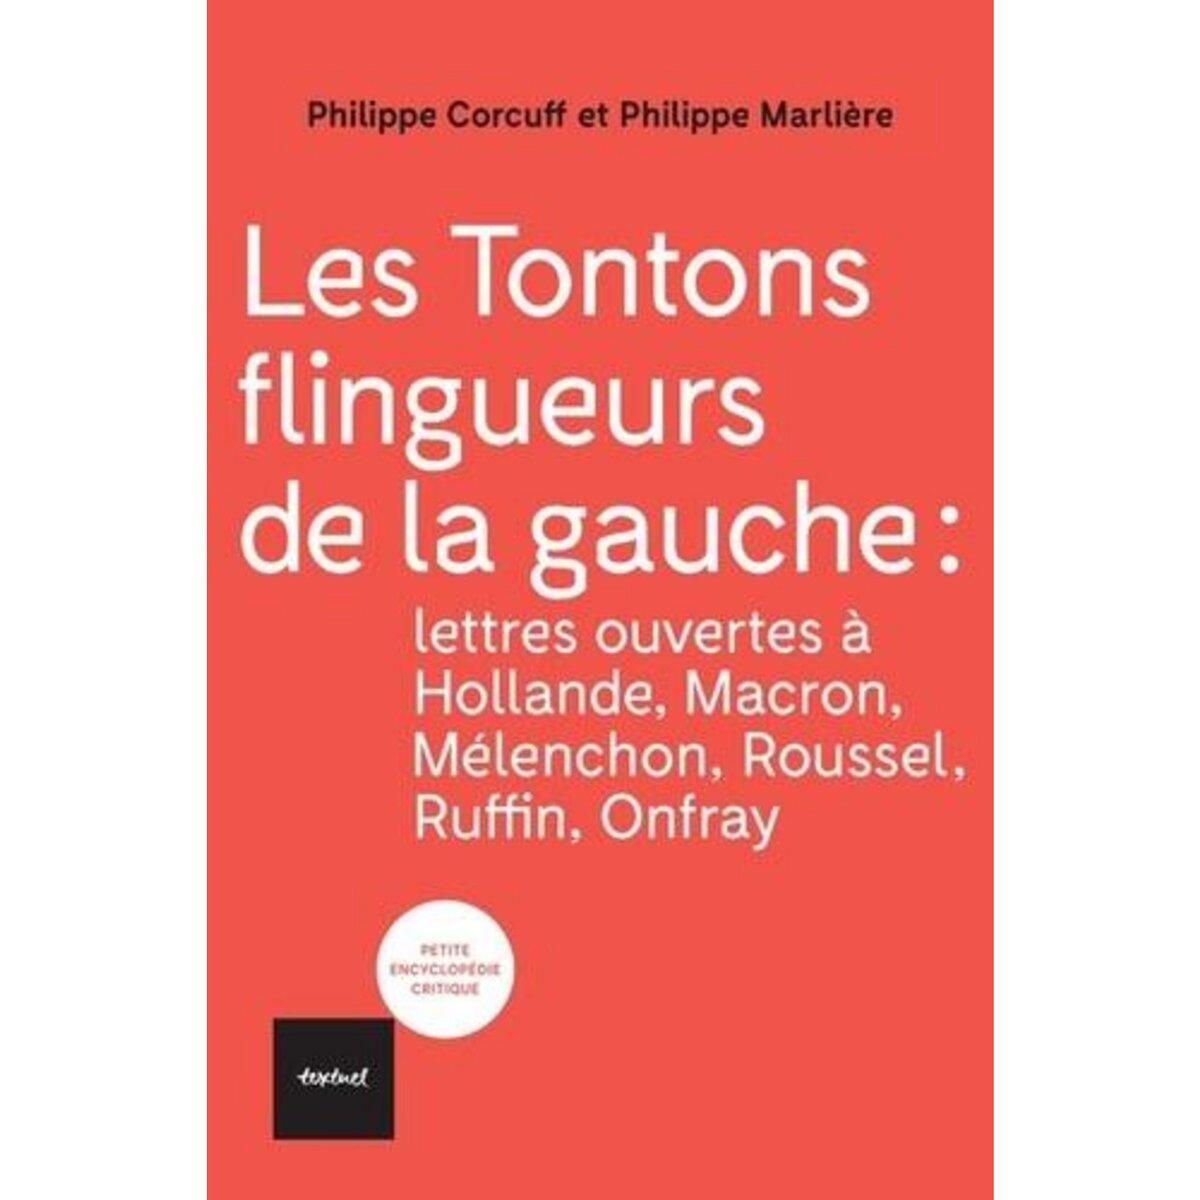  LES TONTONS FLINGUEURS DE LA GAUCHE. LETTRES OUVERTES A HOLLANDE, MACRON, MELENCHON, ROUSSEL, RUFFIN, ONFRAY, Corcuff Philippe